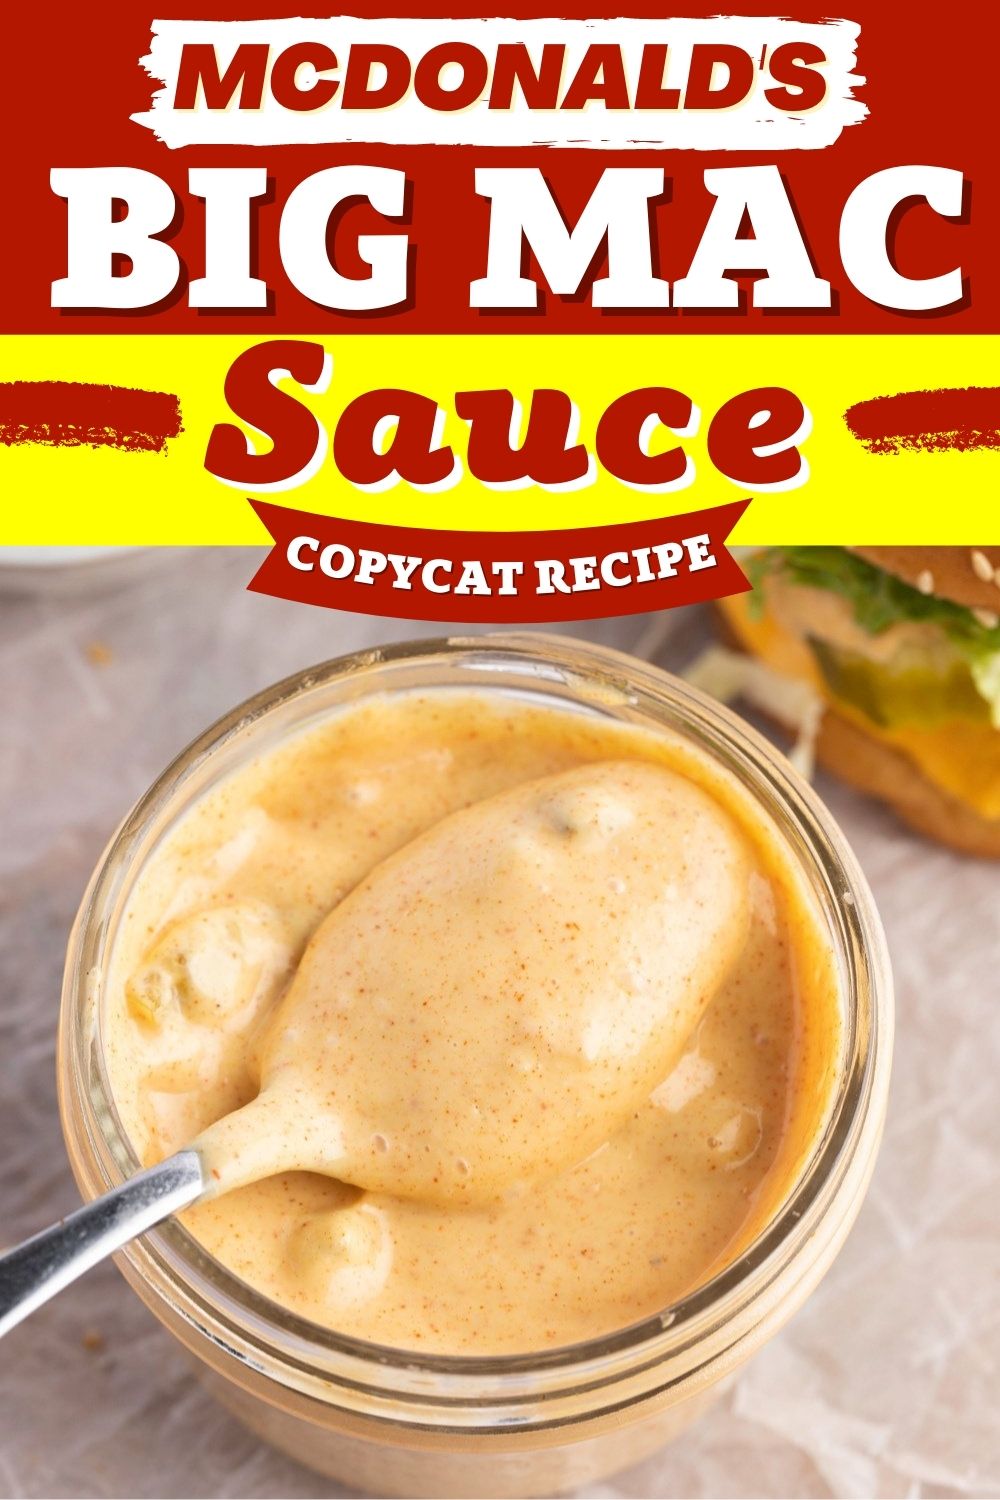 McDonald's Big Mac Sauce Copycat Recipe